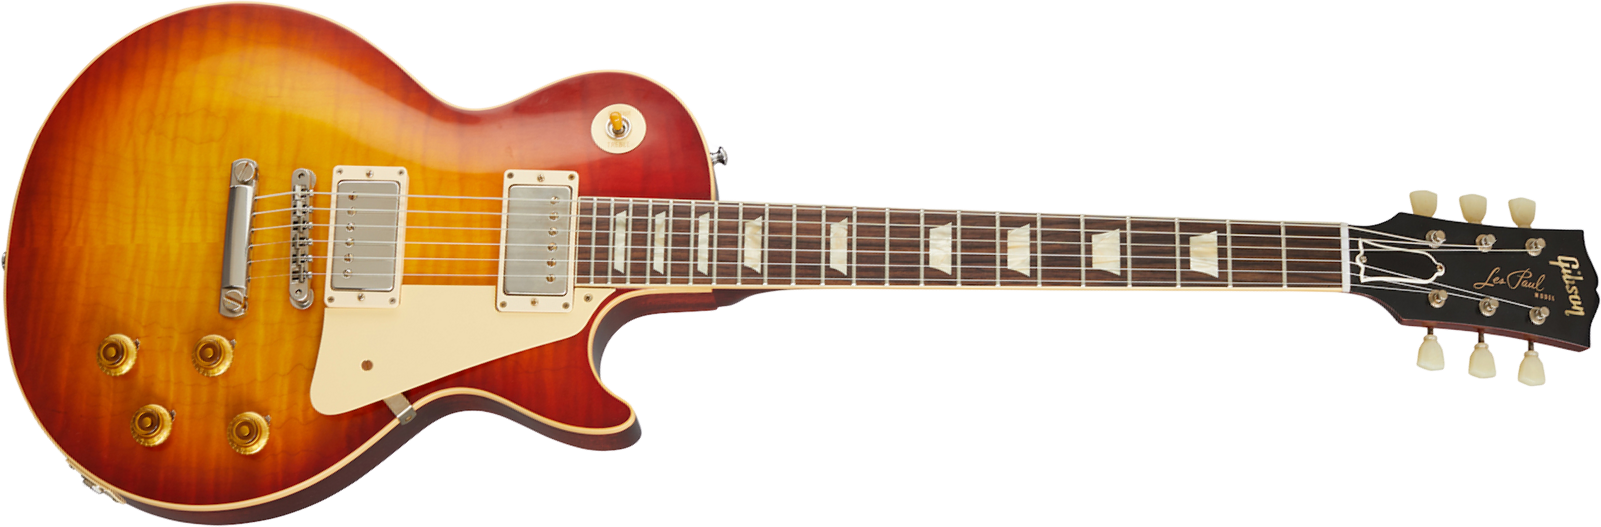 Gibson Custom Shop Les Paul Standard 1959 Reissue 2020 2h Ht Rw - Vos Washed Cherry Sunburst - Enkel gesneden elektrische gitaar - Main picture